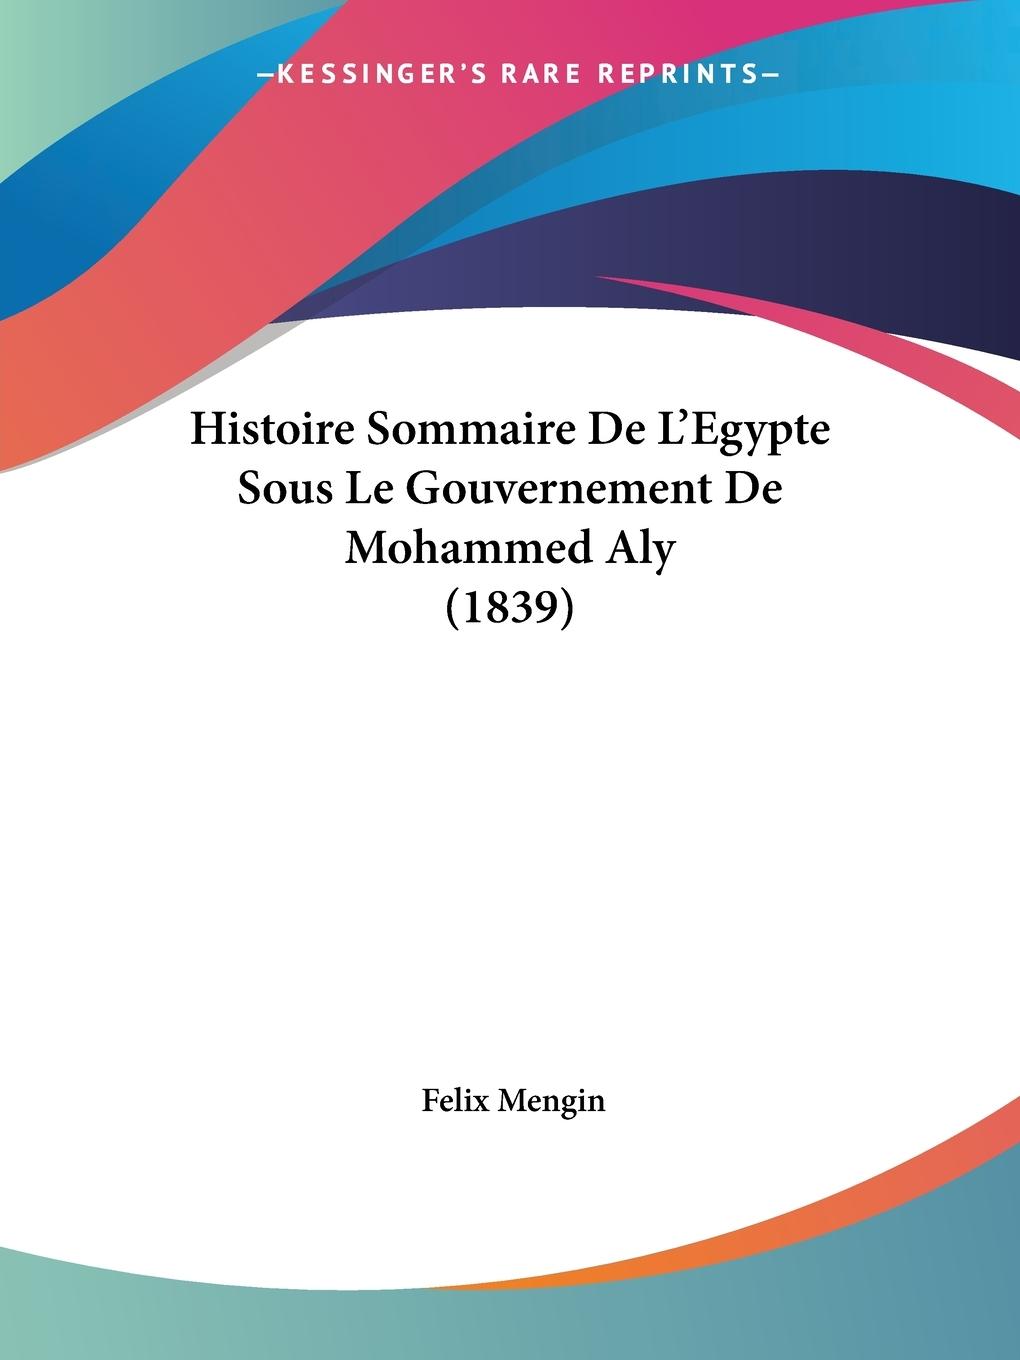 Histoire Sommaire De L Egypte Sous Le Gouvernement De Mohammed Aly (1839) - Mengin, Felix